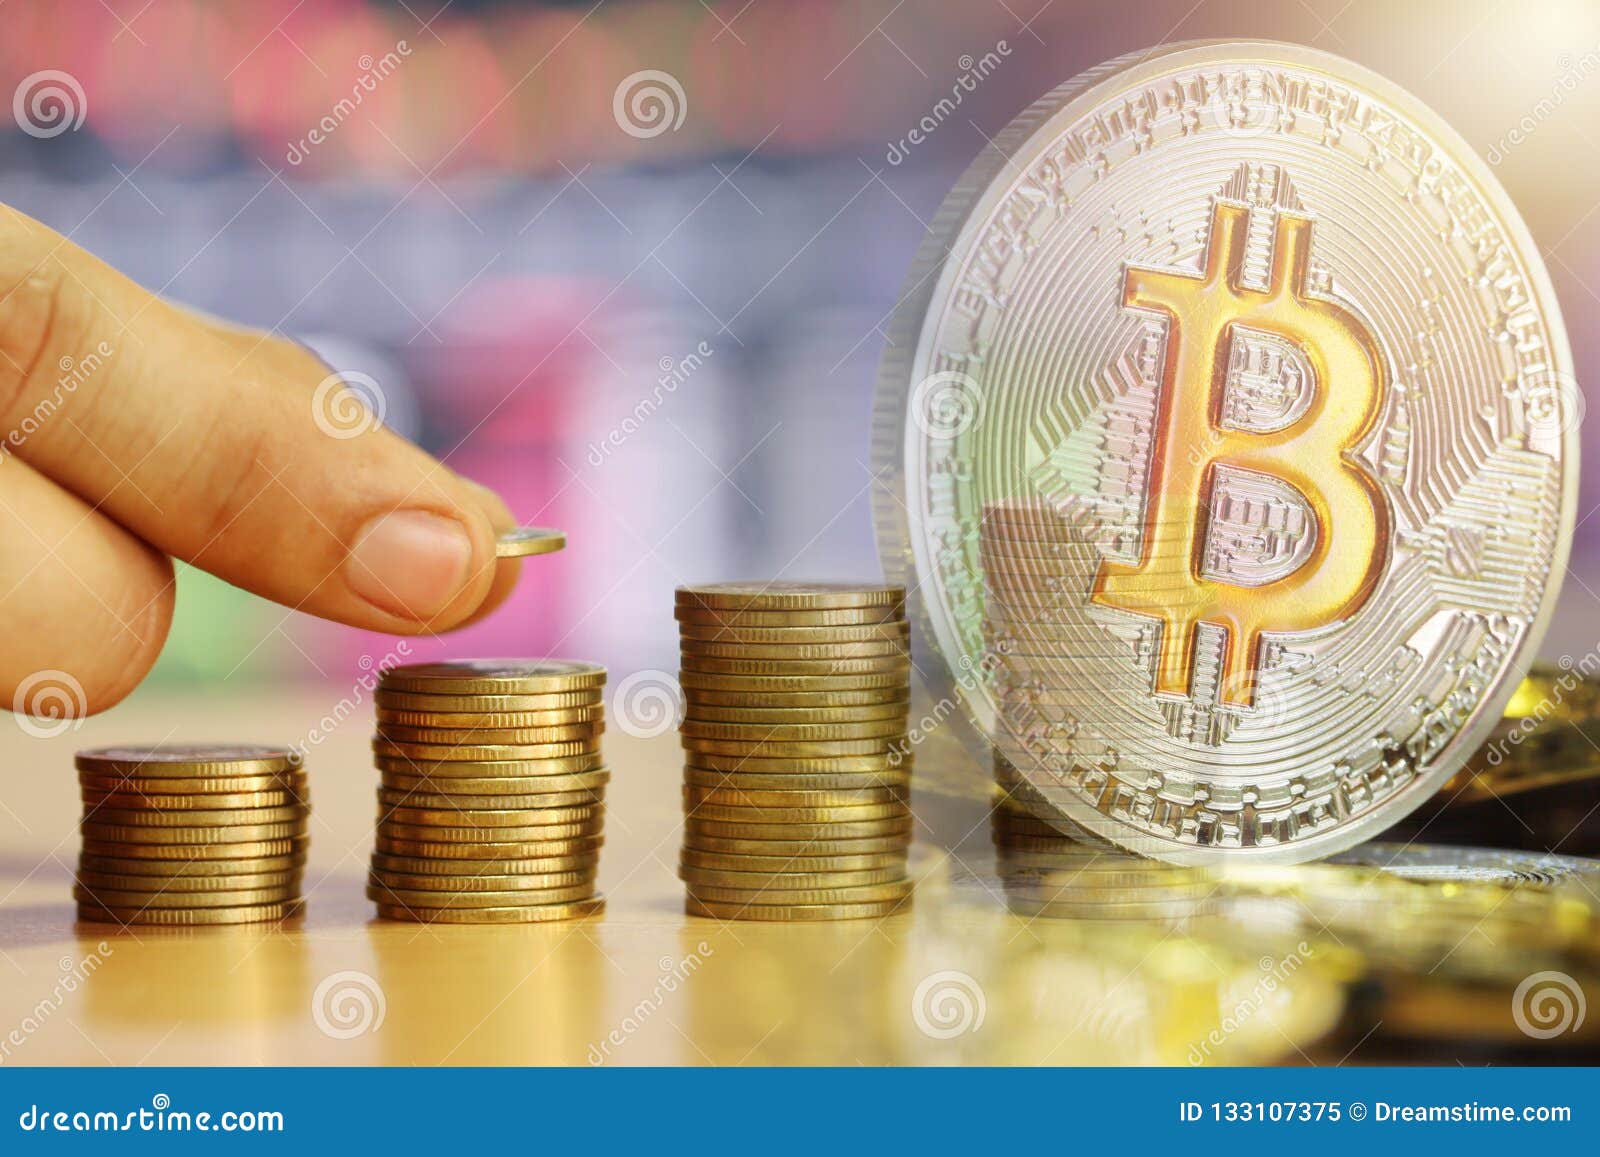 bitcoin double up come rendere il software minerario bitcoin